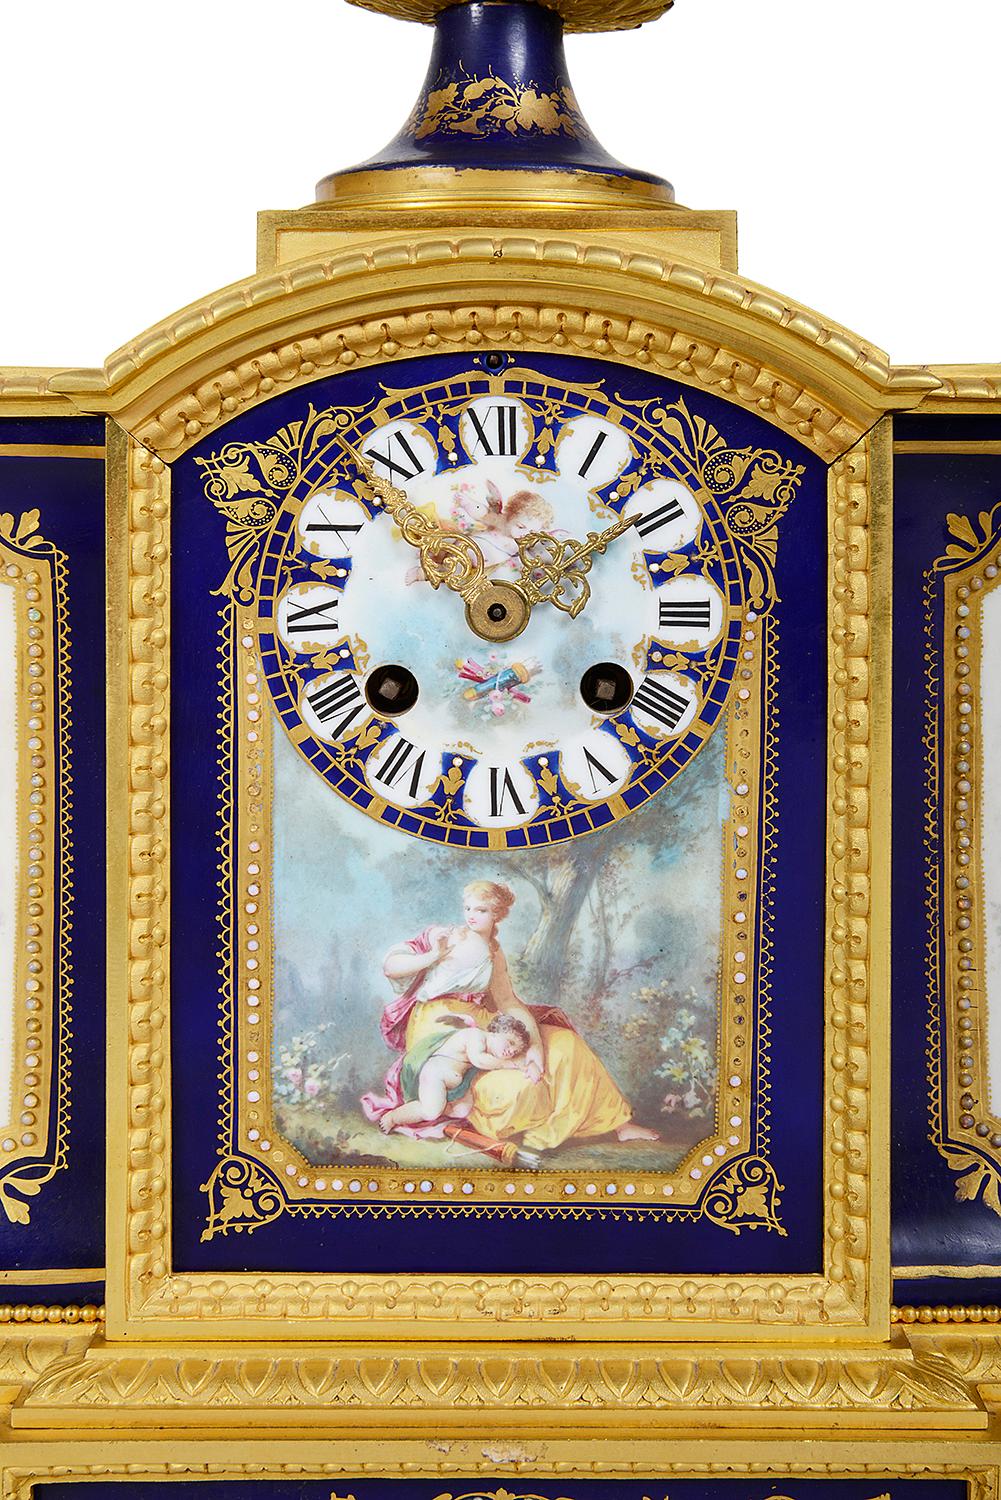 
Ein feiner Qualität späten 19. Jahrhundert Französisch Sèvres-Stil Kaminsims Uhr, mit einem wunderbaren vergoldeten Ormolu Gehäuse mit einer Urne auf der Oberseite mit kobaltblauem Grund Porzellan und eine eingelegte klassische handgemalte Szene